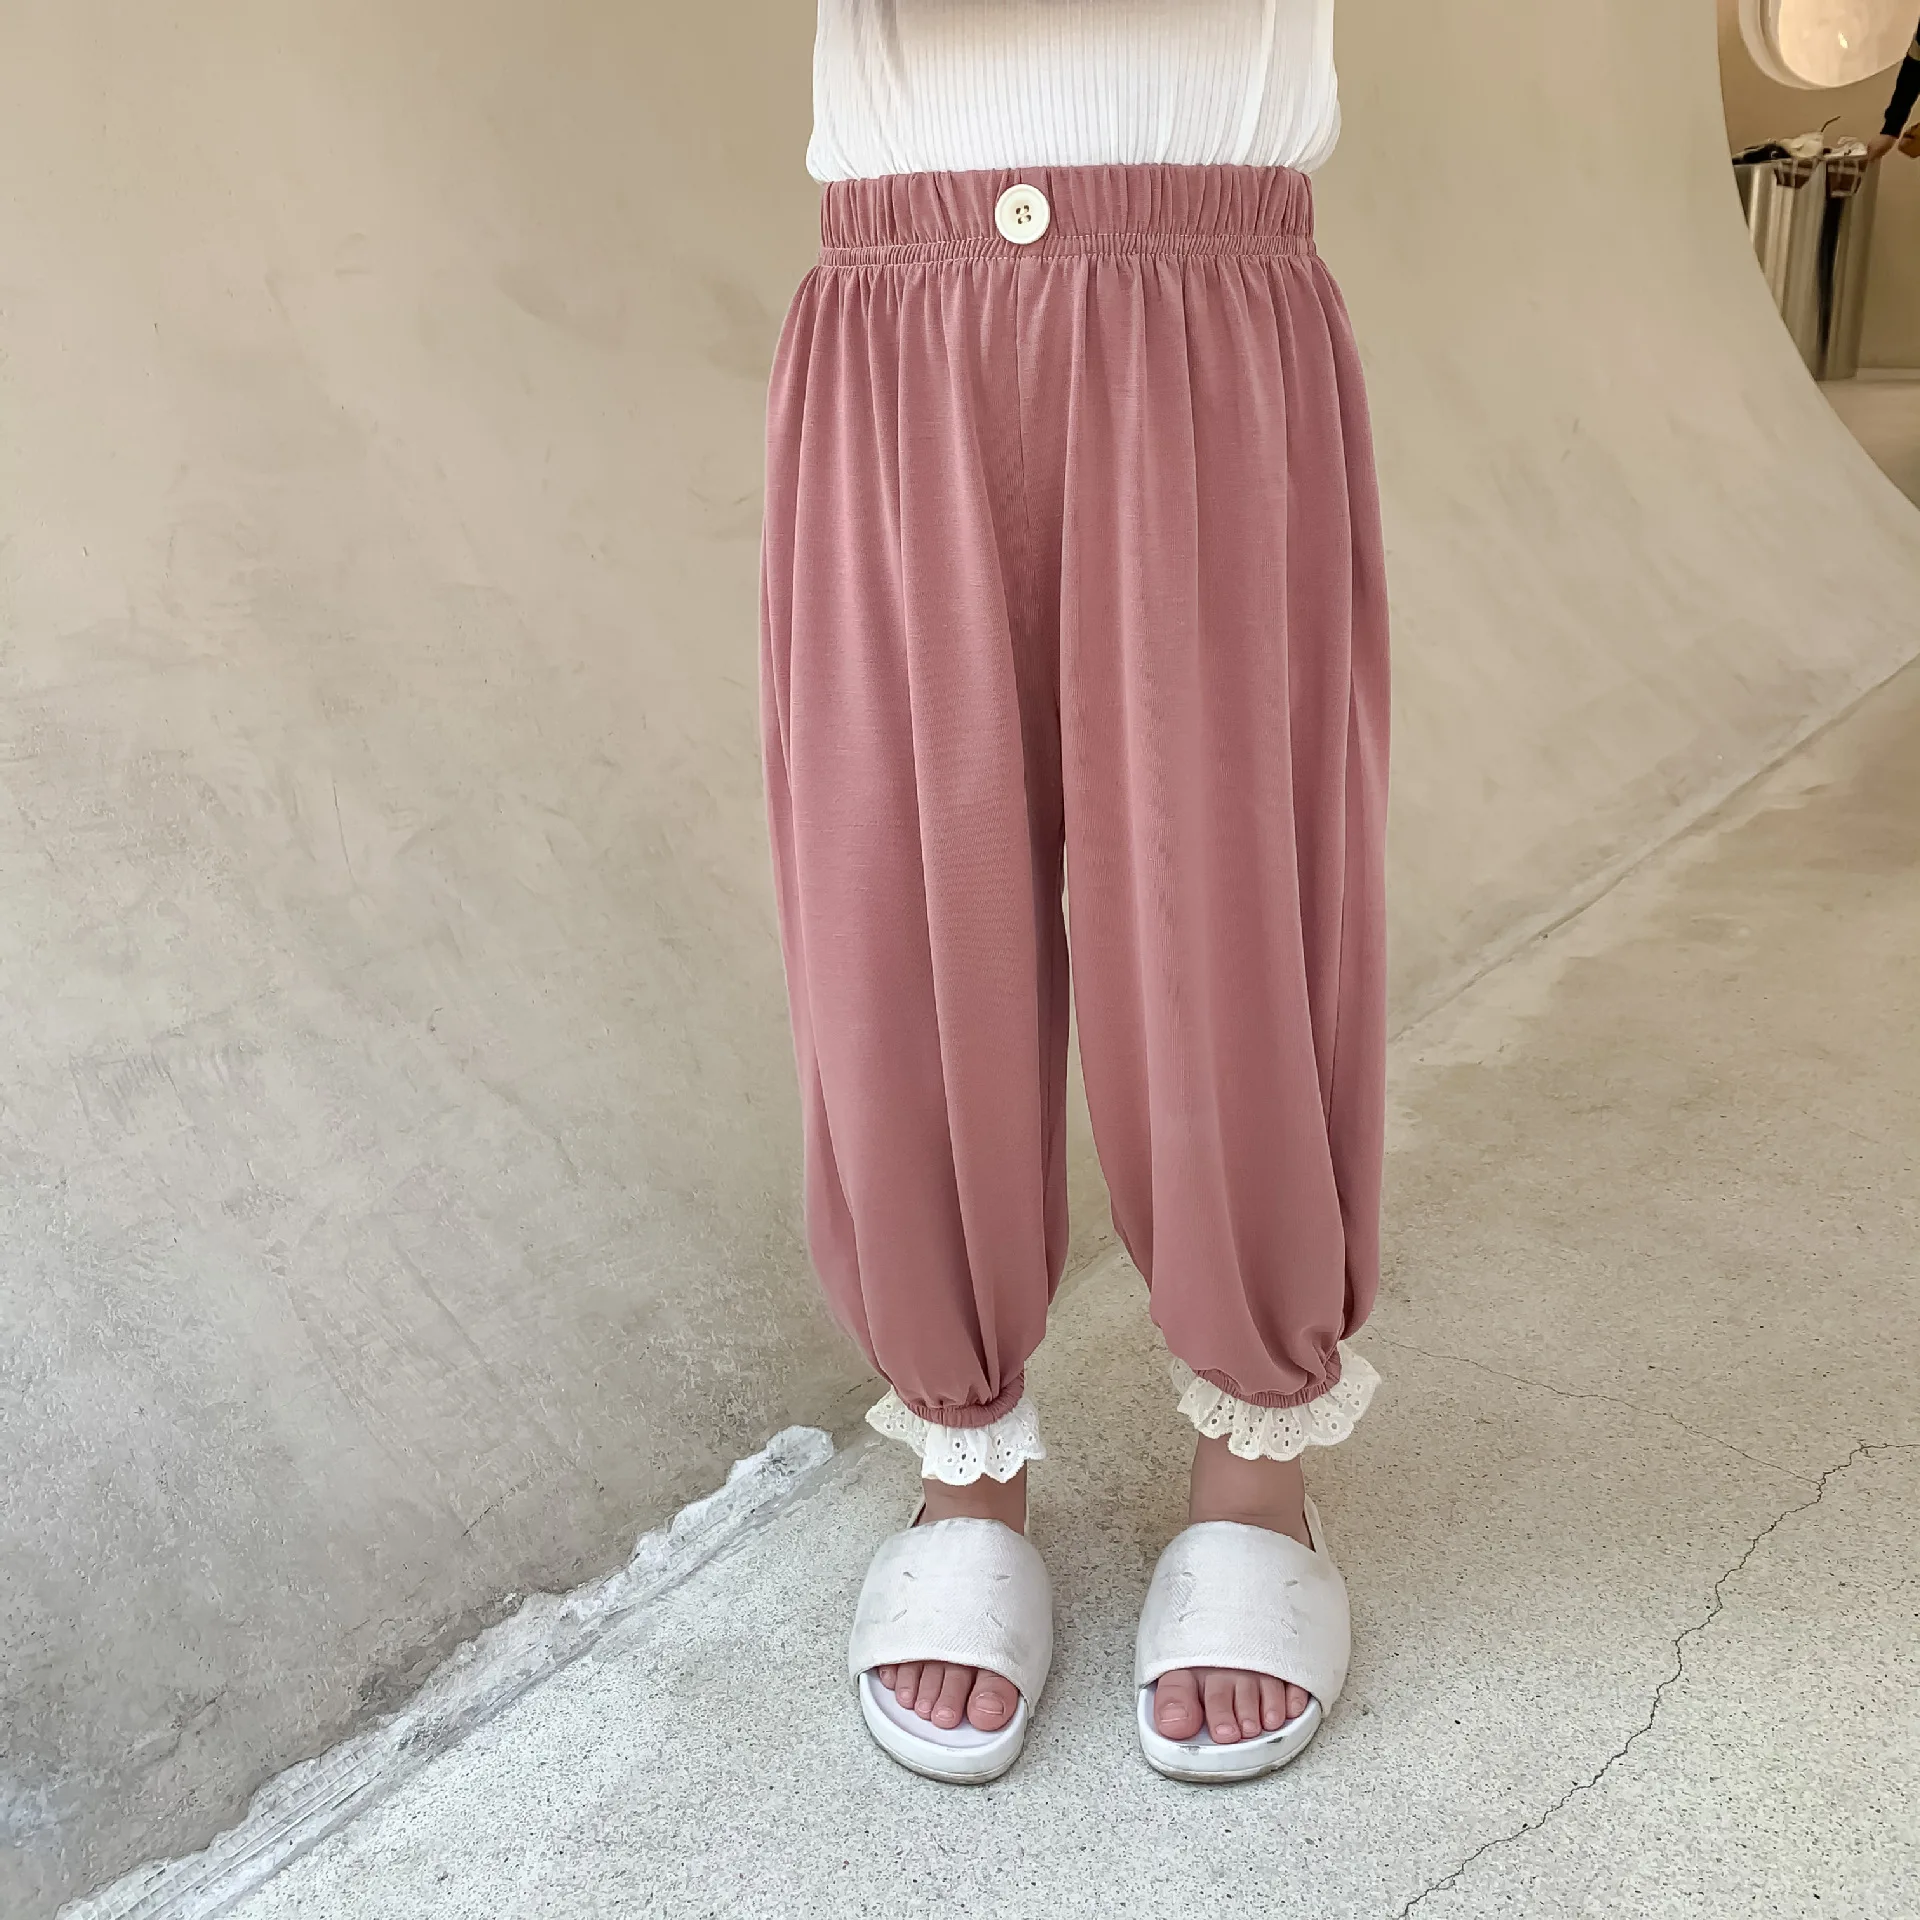 Letni Nowa dostawa koreański styl spodnie dla dziewczynek uniwersalne mosquito Dowód luźne długie spodnie miękkie dla ślicznych modnych dziewczynek